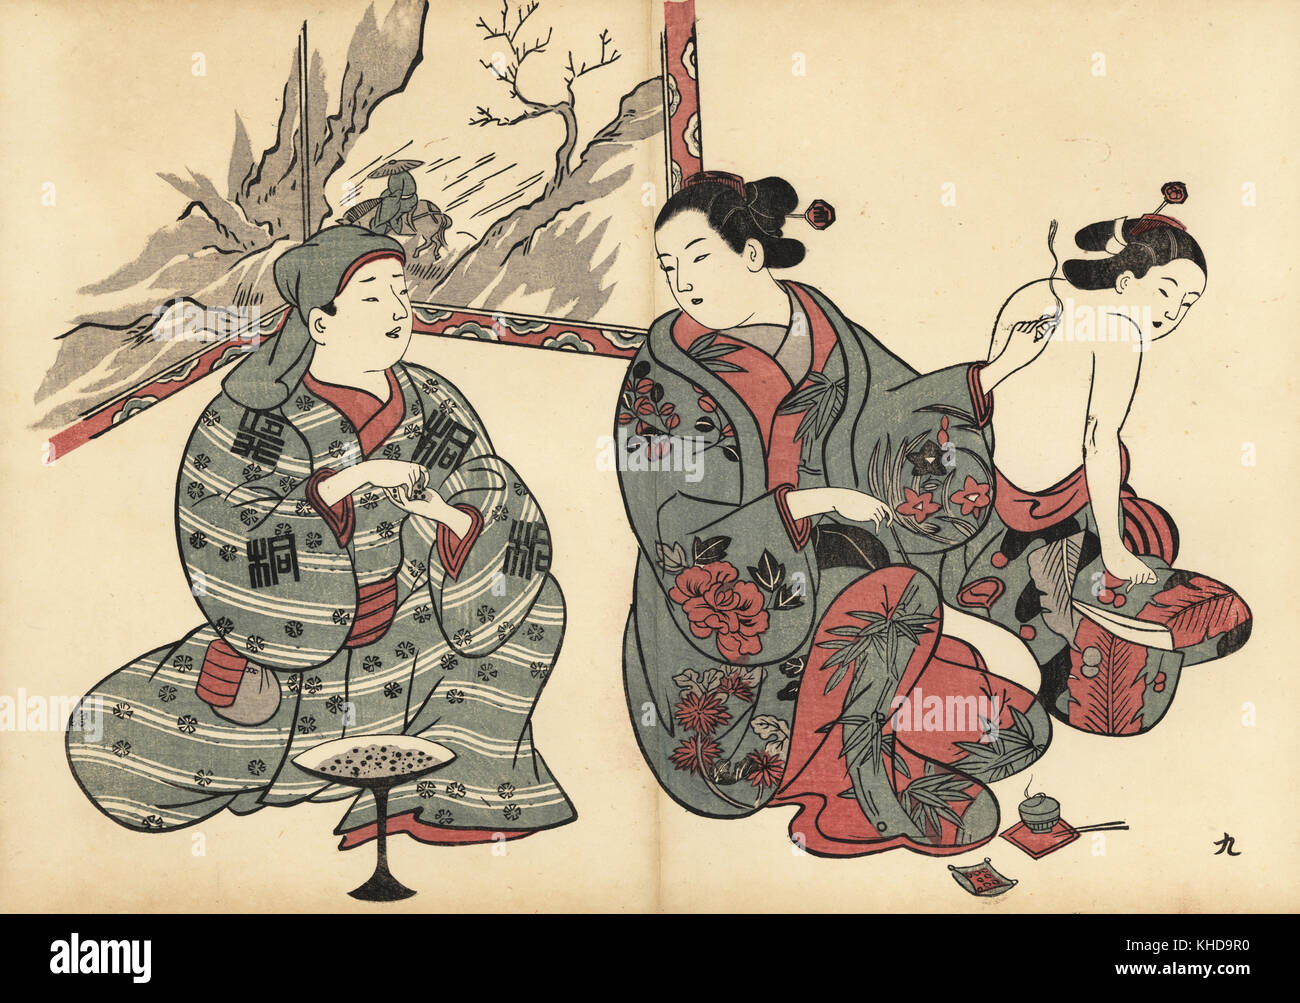 Le traitement d'une courtisane femme avec la moxibustion, la combustion de l'armoise (moxa) sur sa peau. Gravure sur bois par Okumura Masanobu (1686-1764), Photo de Fuzoku Emakimono Faire défiler du commerce de l'eau, Tokyo, réimpression vers 1880. Banque D'Images